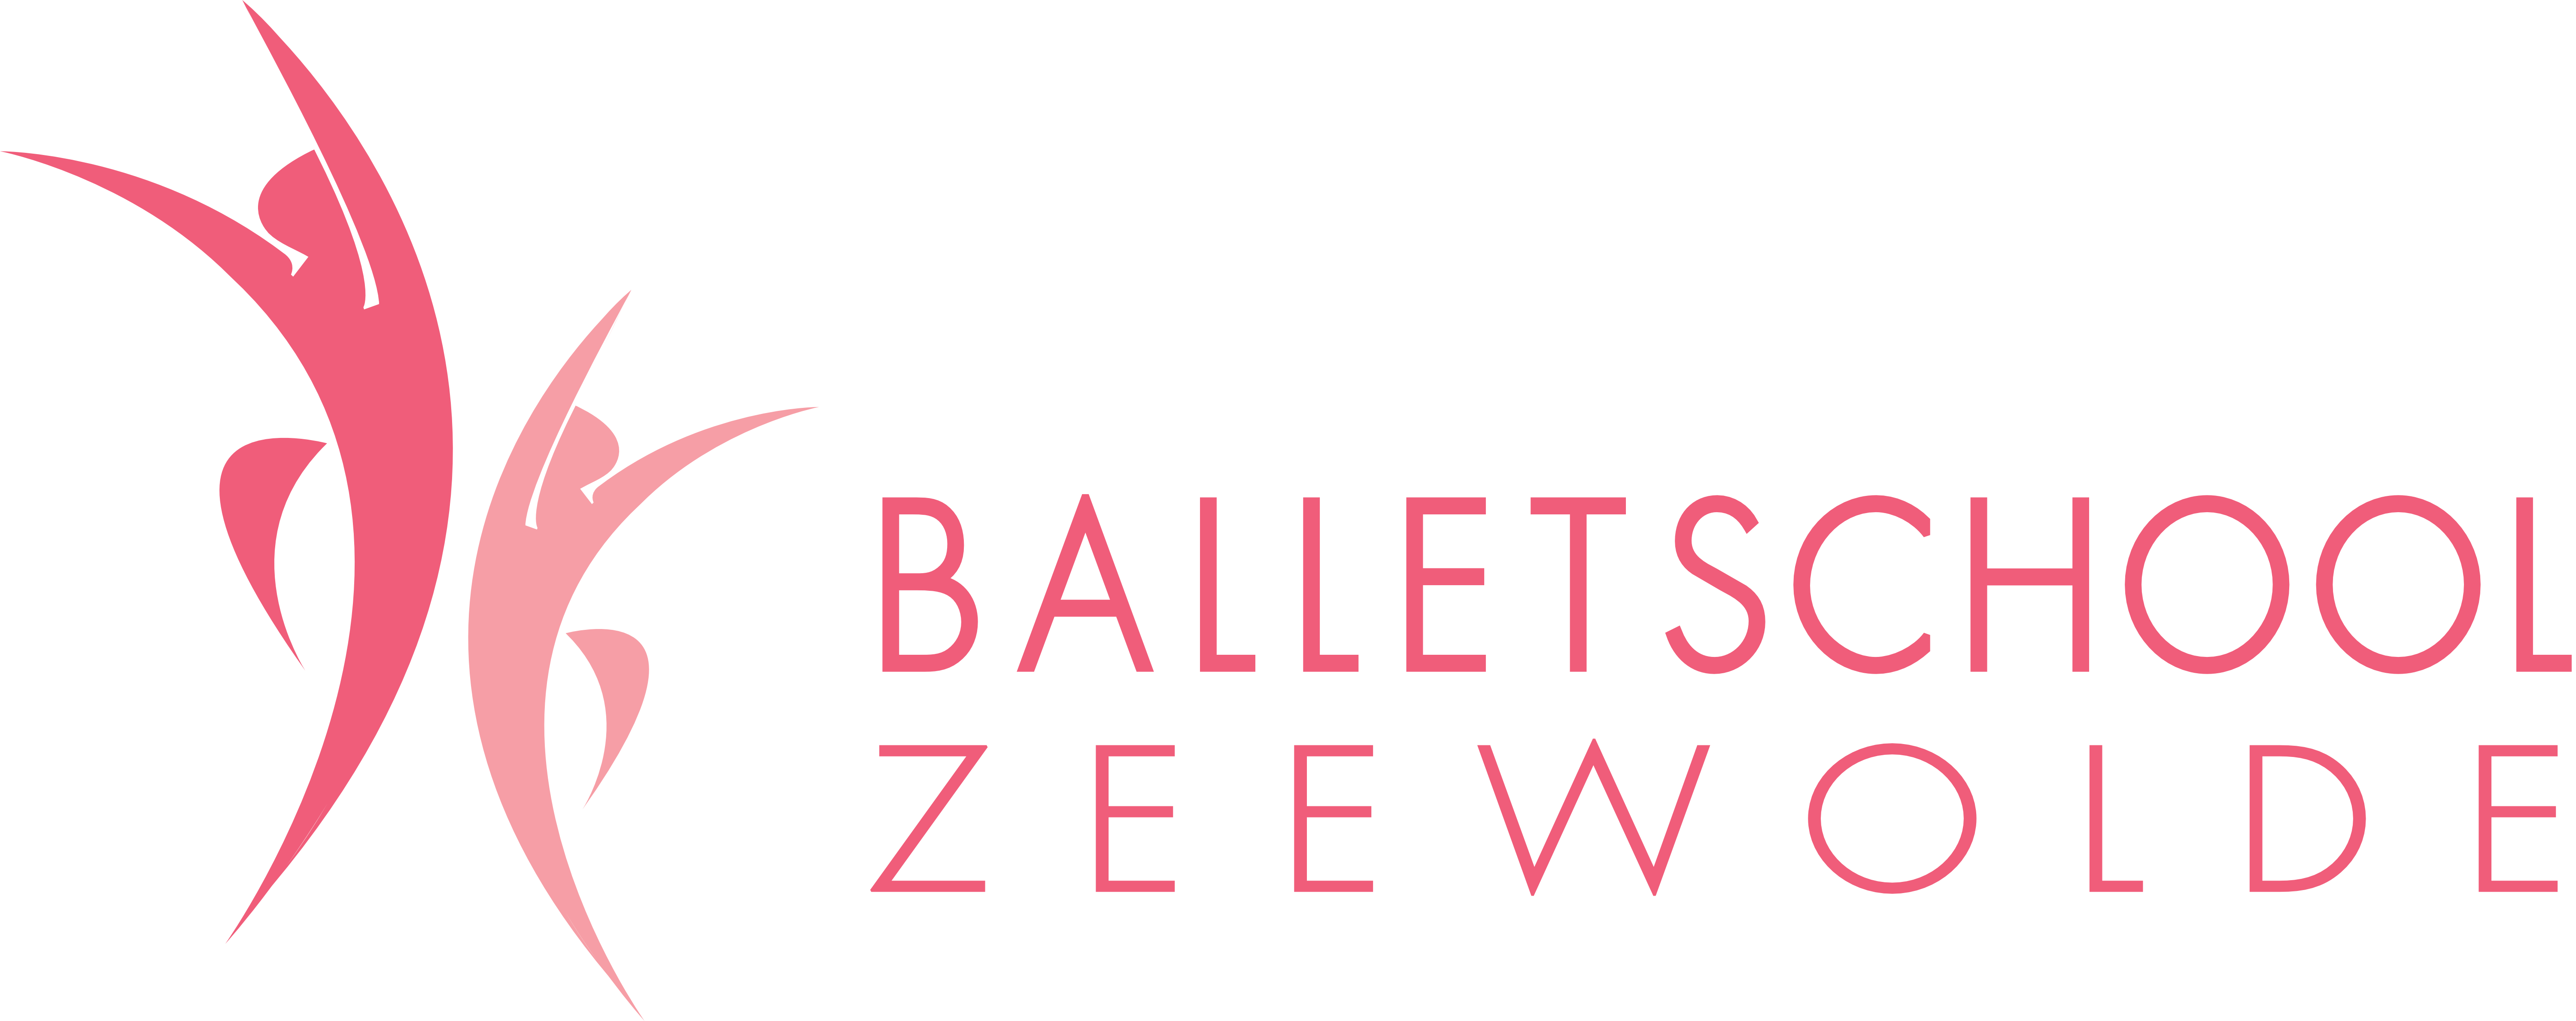 Balletschool Zeewolde